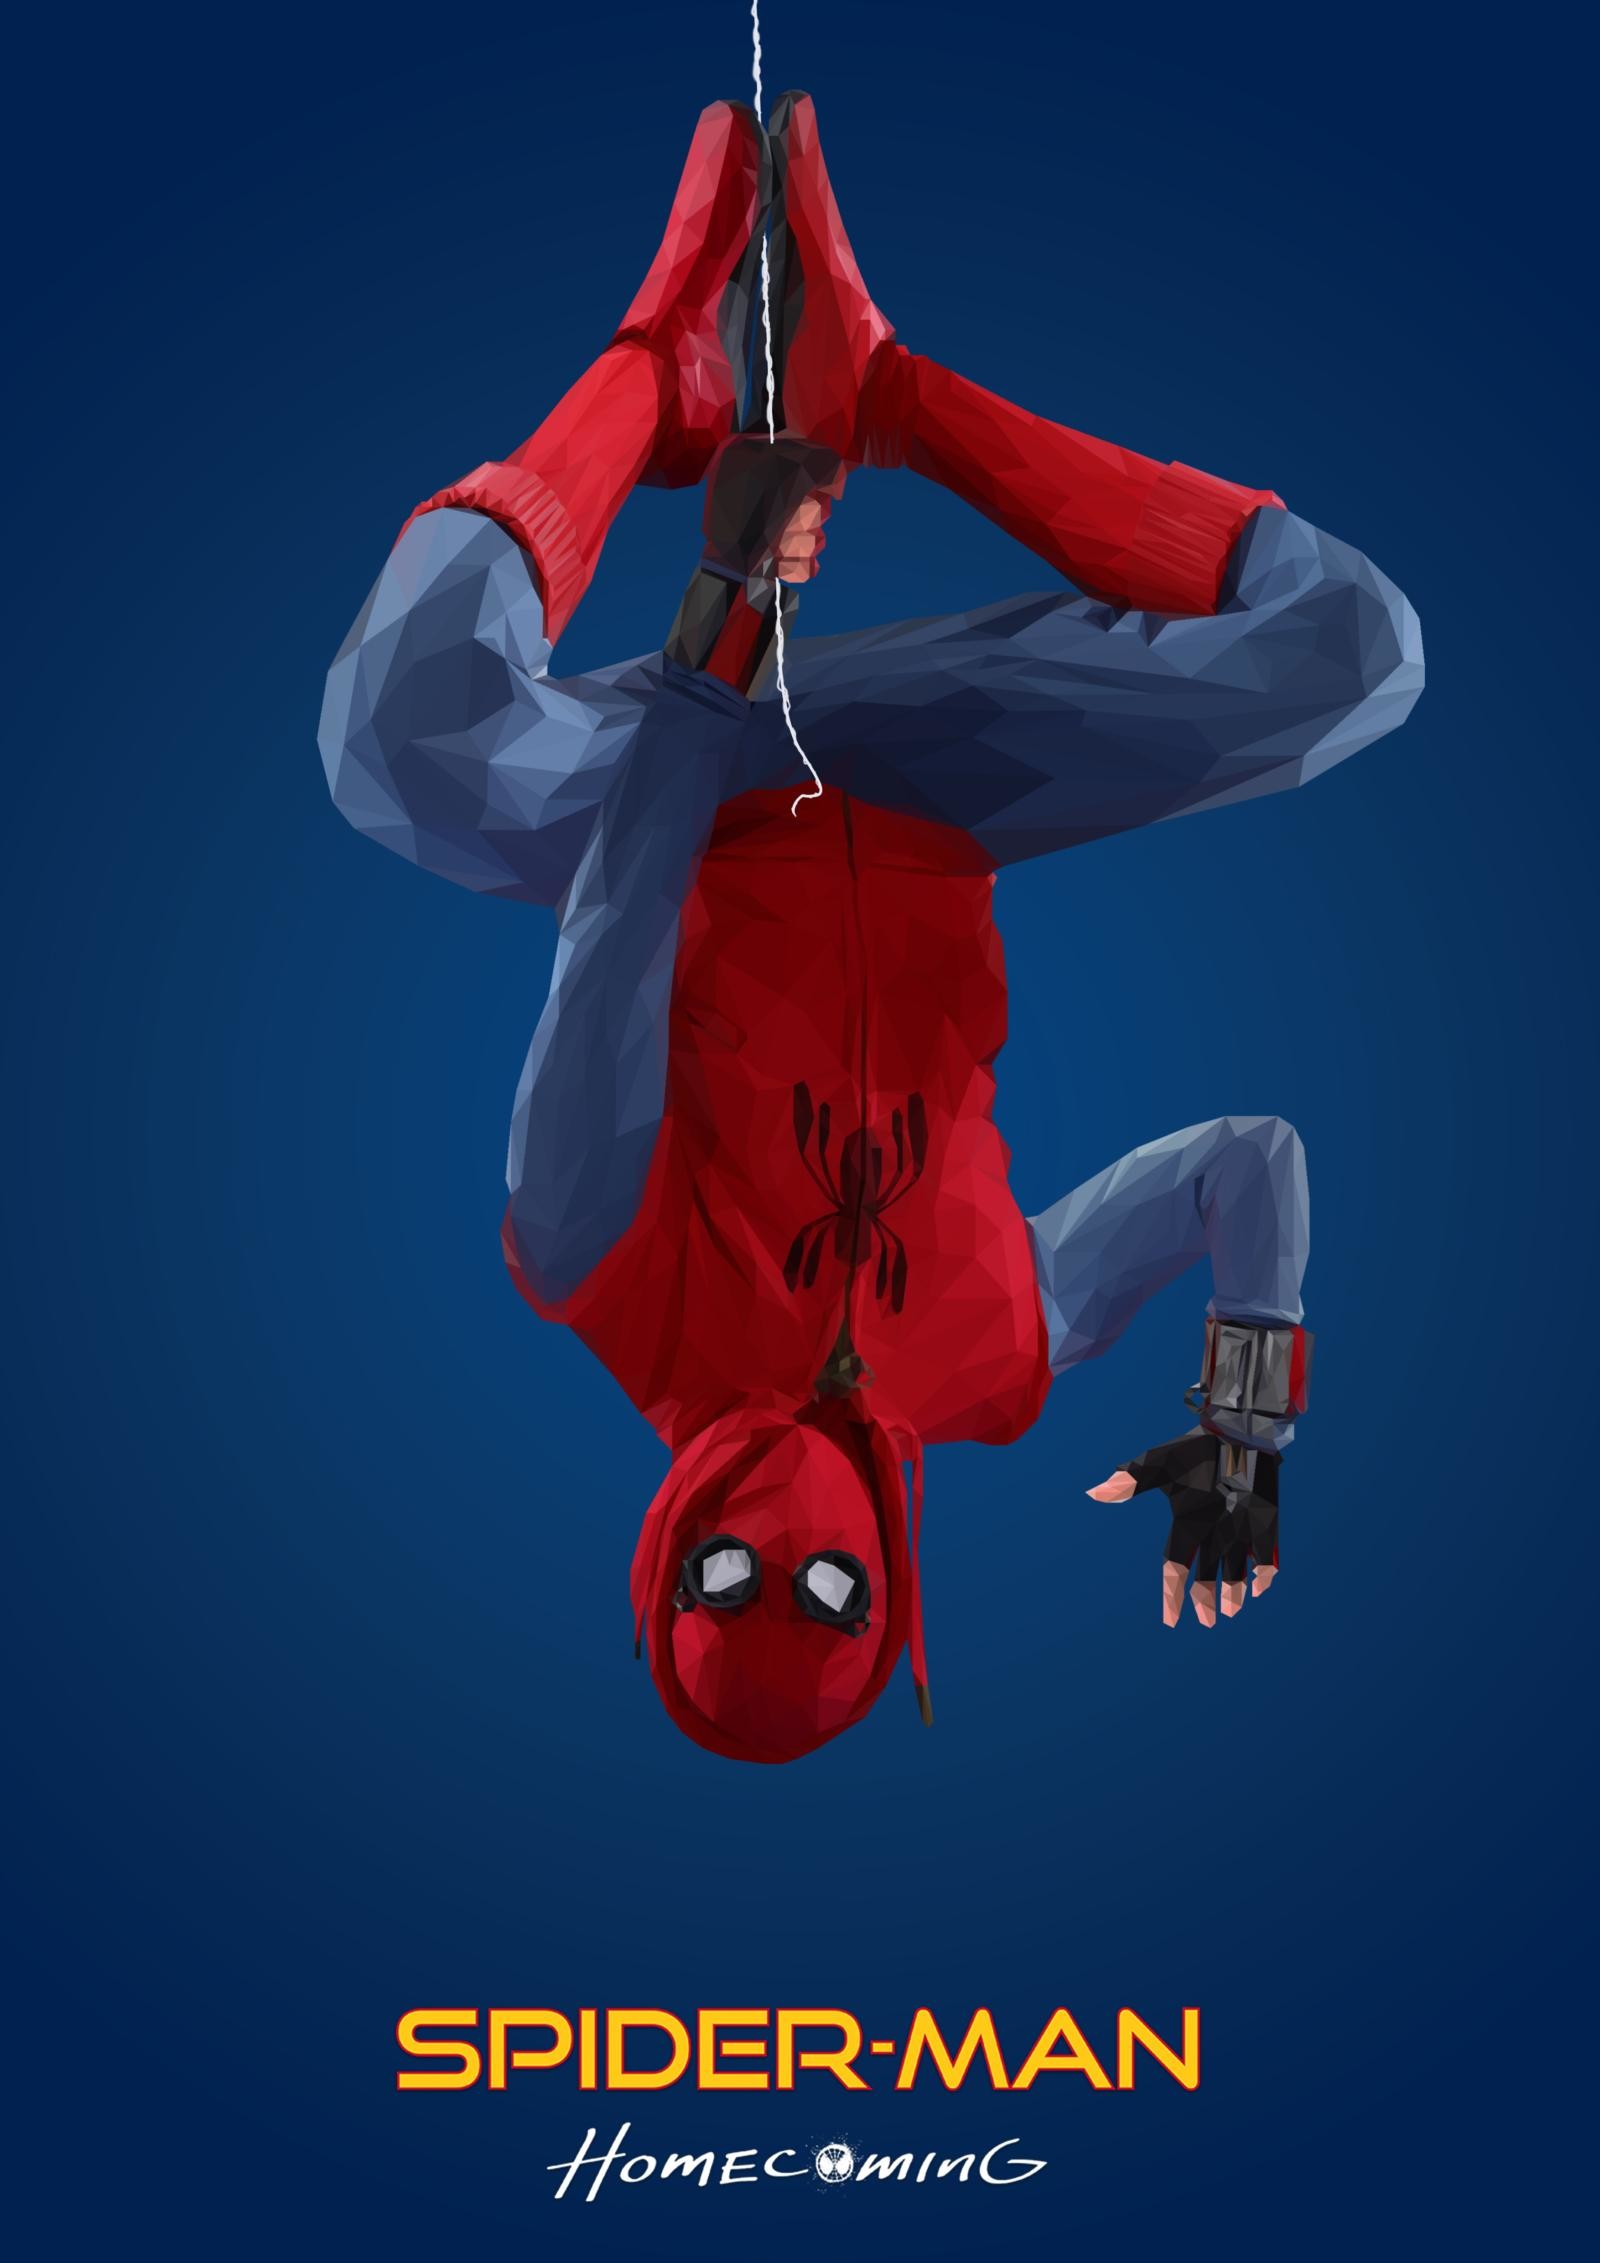 fond d'écran spiderman homecoming hd,homme araignée,personnage fictif,performance,super héros